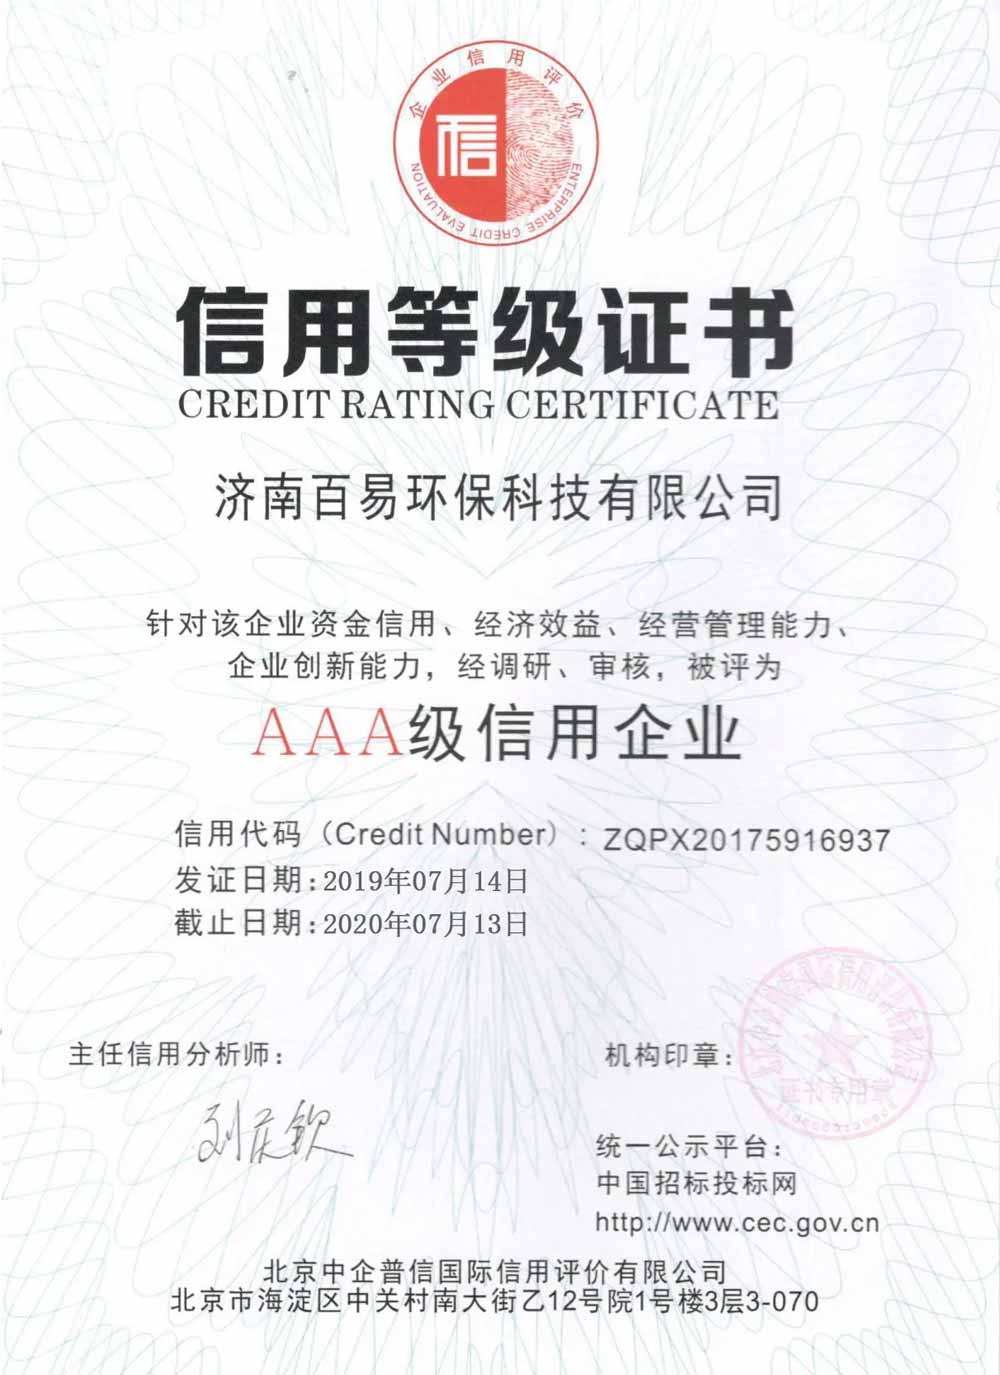 credit rating certificate